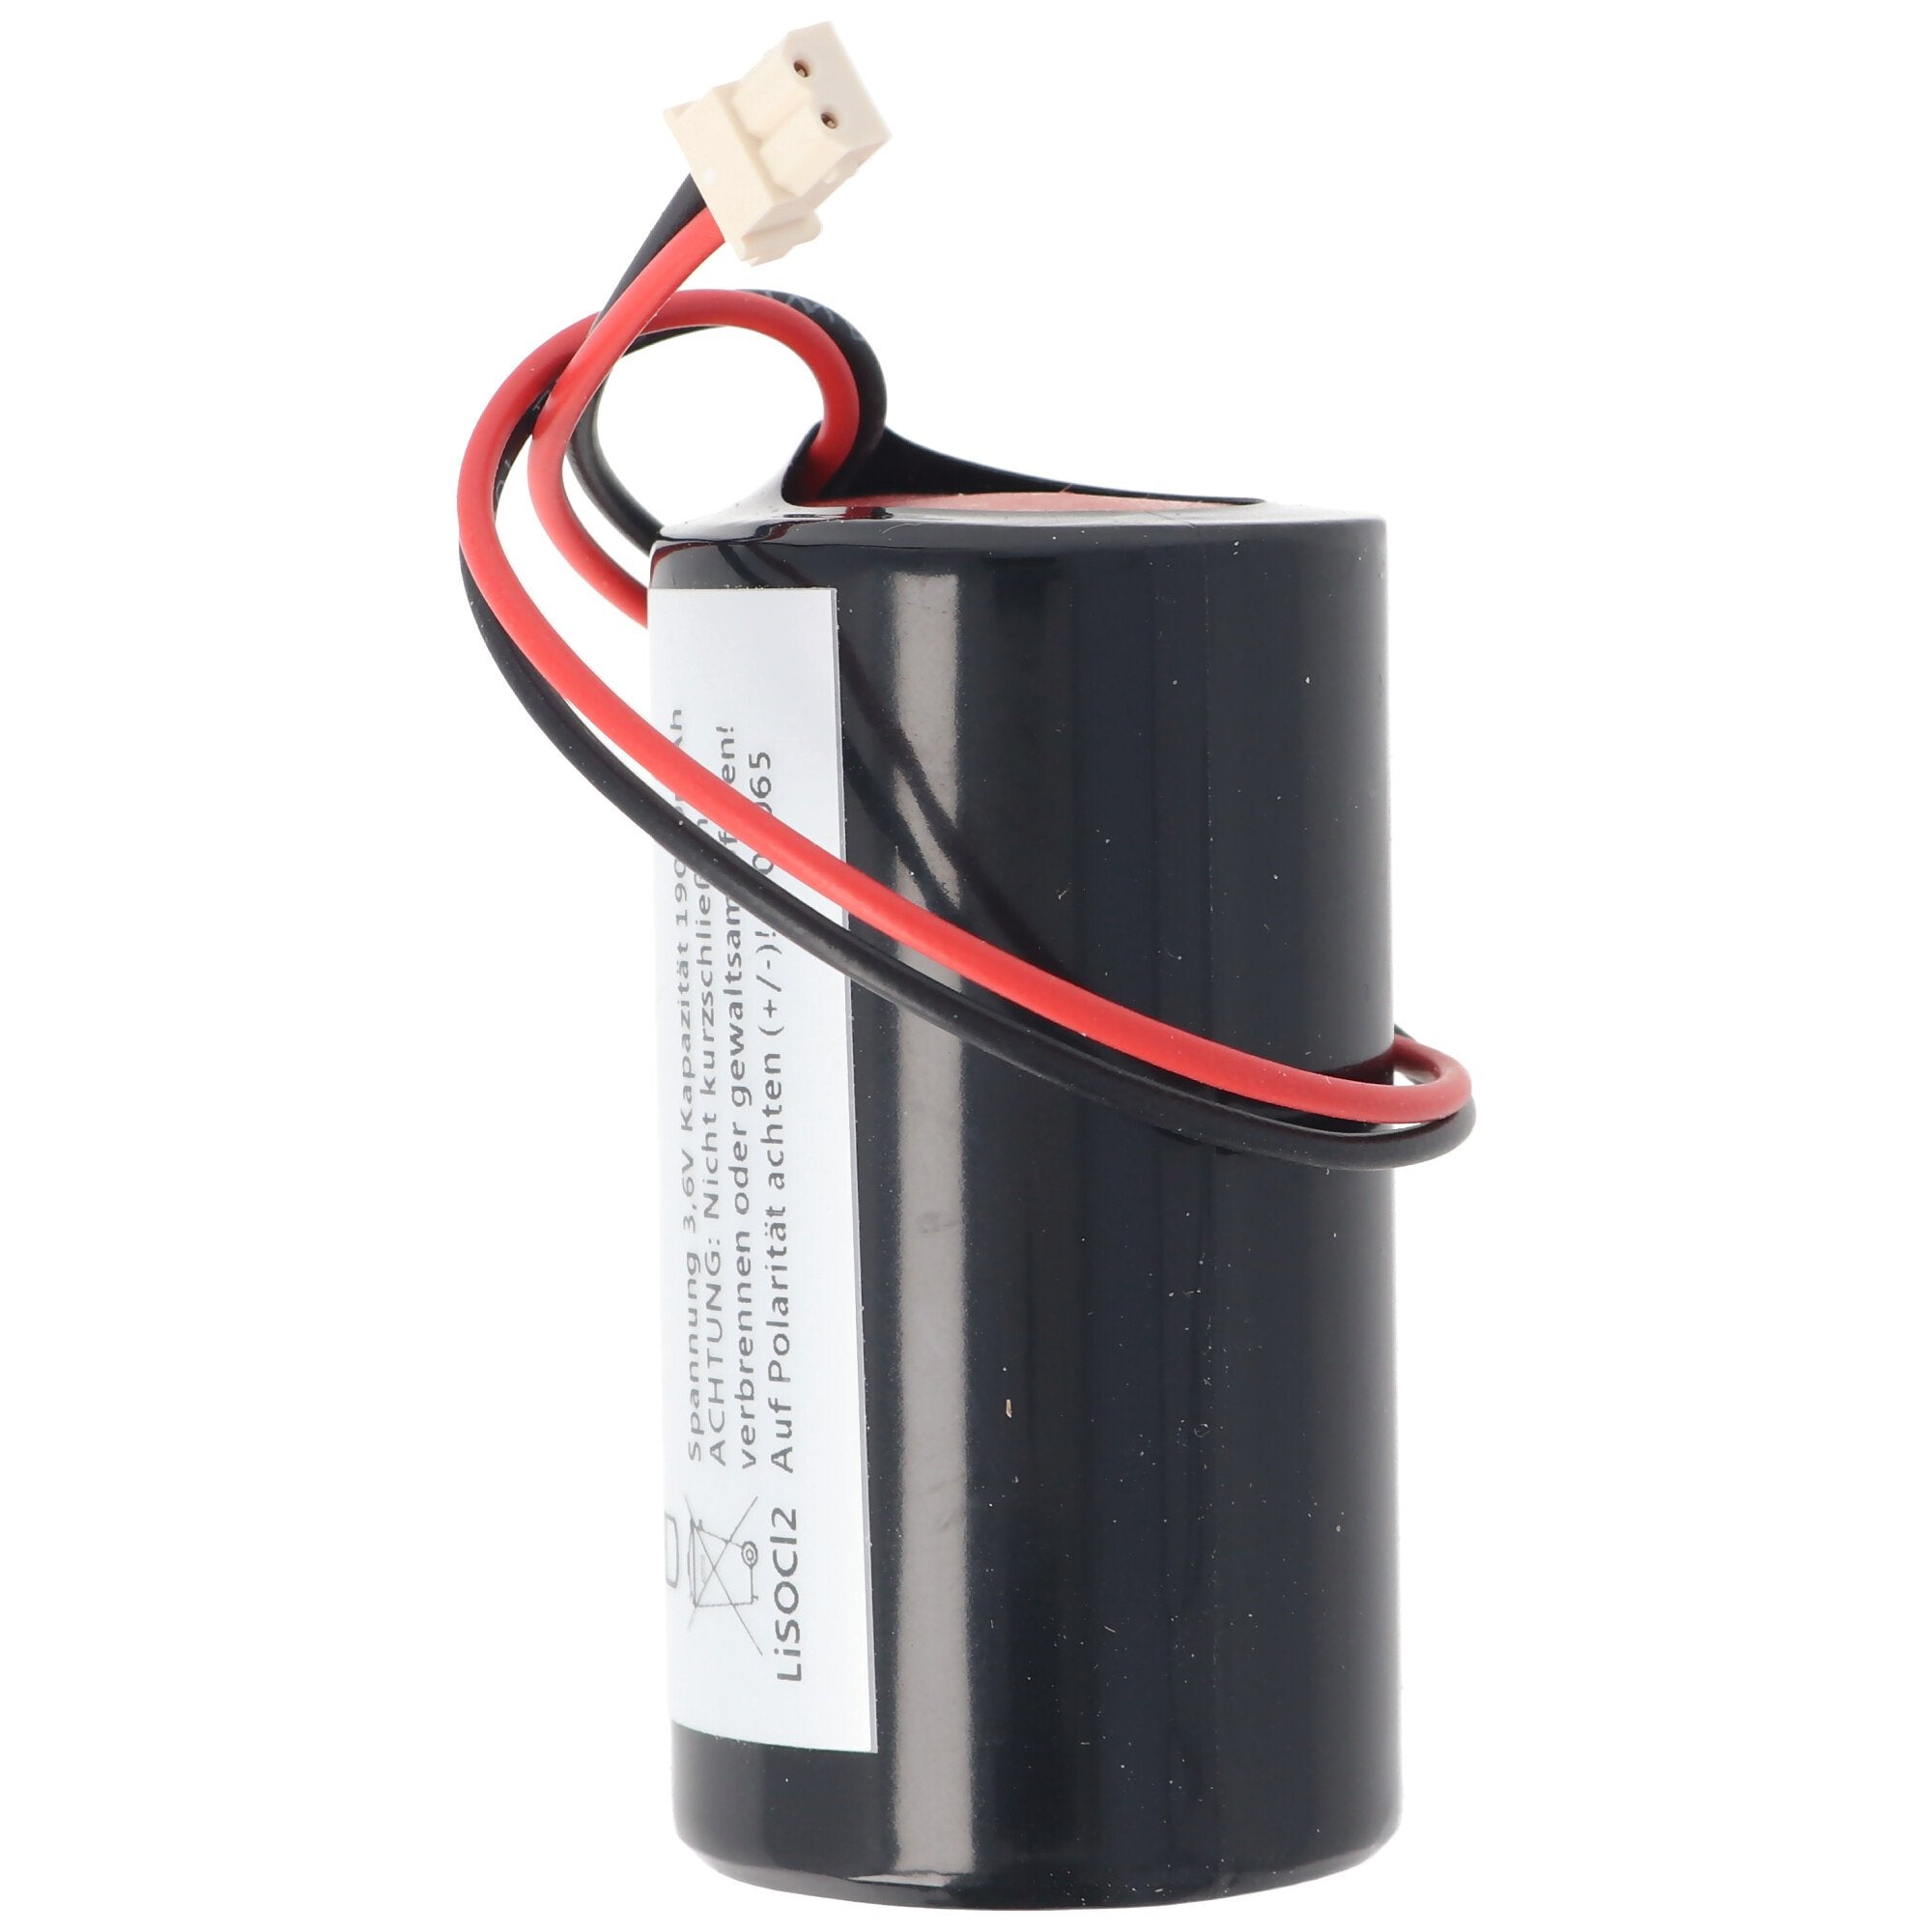 19000mAh battery suitable for Eve ER34615-GL101, 0-9912-K, ER34615M / W200, Visonic Siren 710, 720